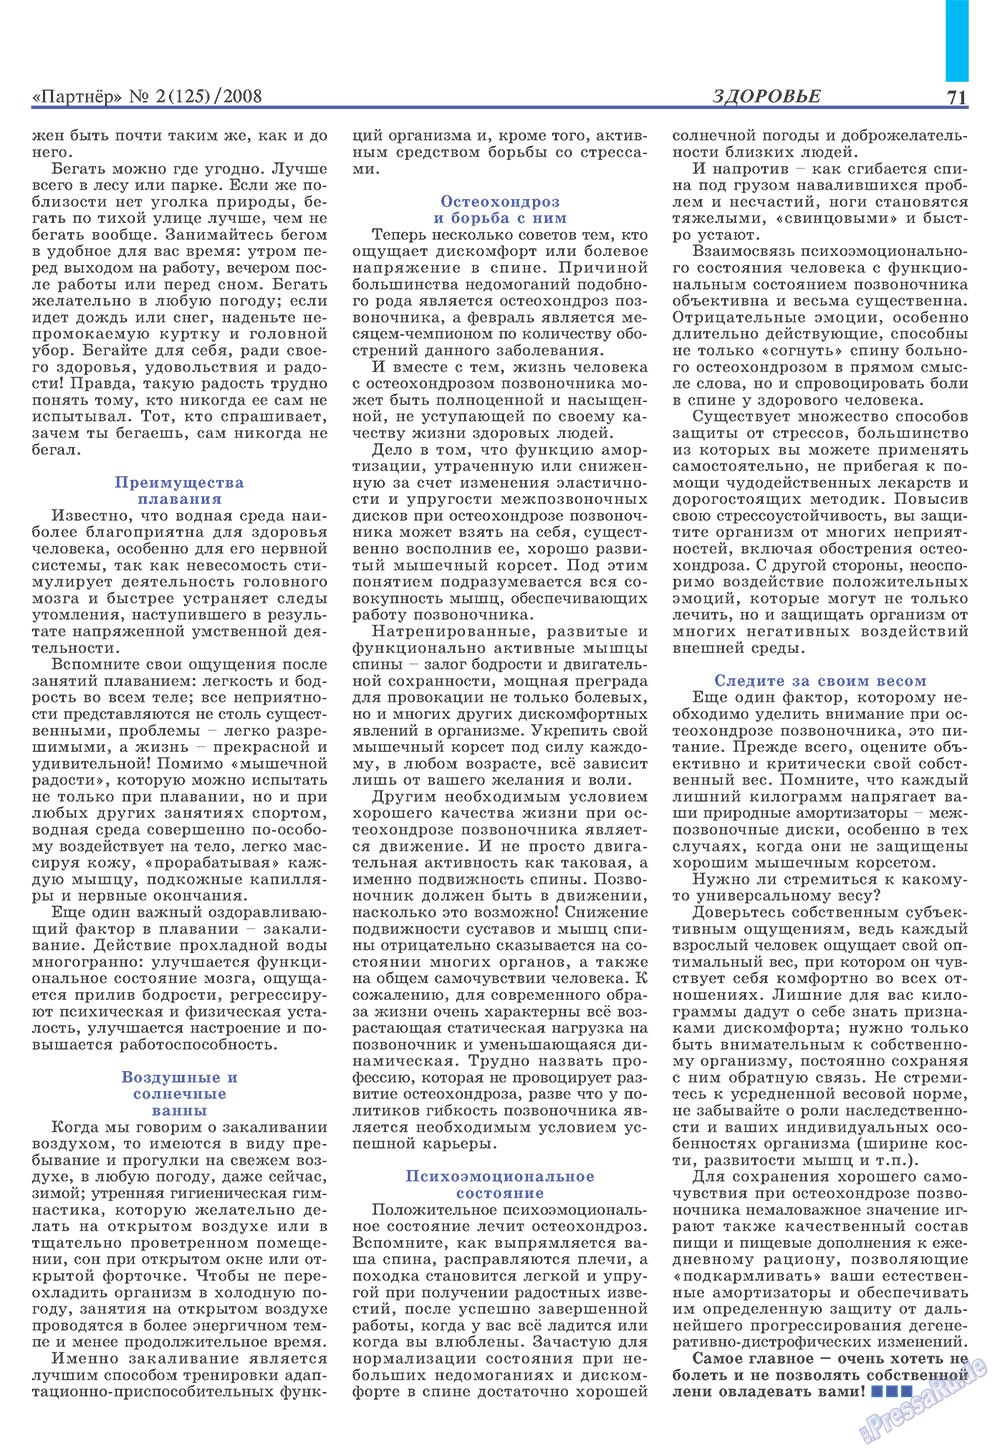 Partner (Zeitschrift). 2008 Jahr, Ausgabe 2, Seite 71